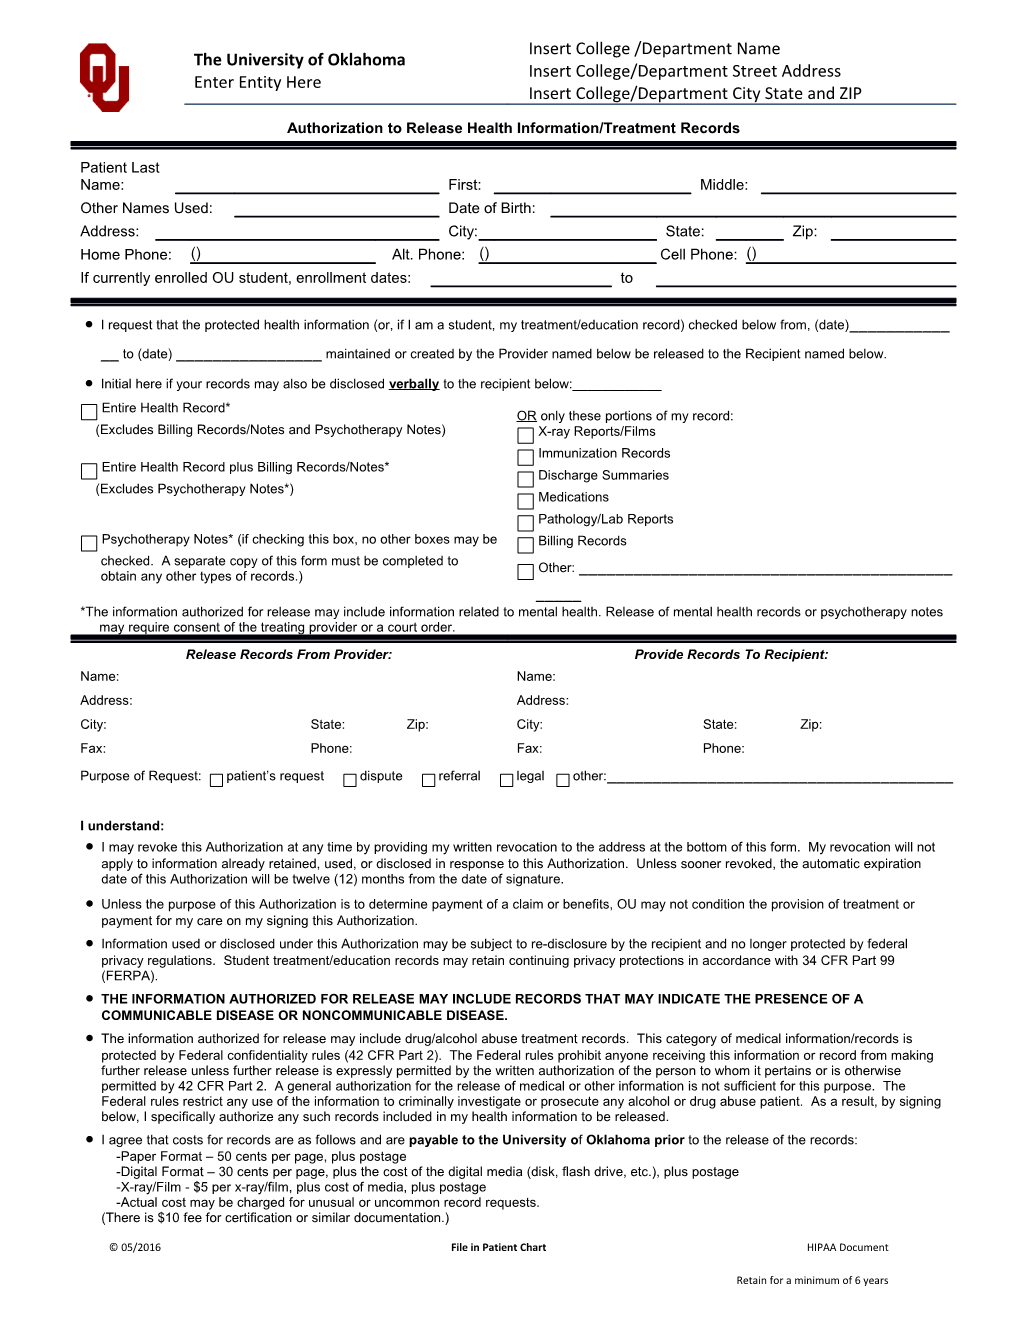 Patient - Authorization Release Request Individuals Health Information-HSC - PENDING (Patient